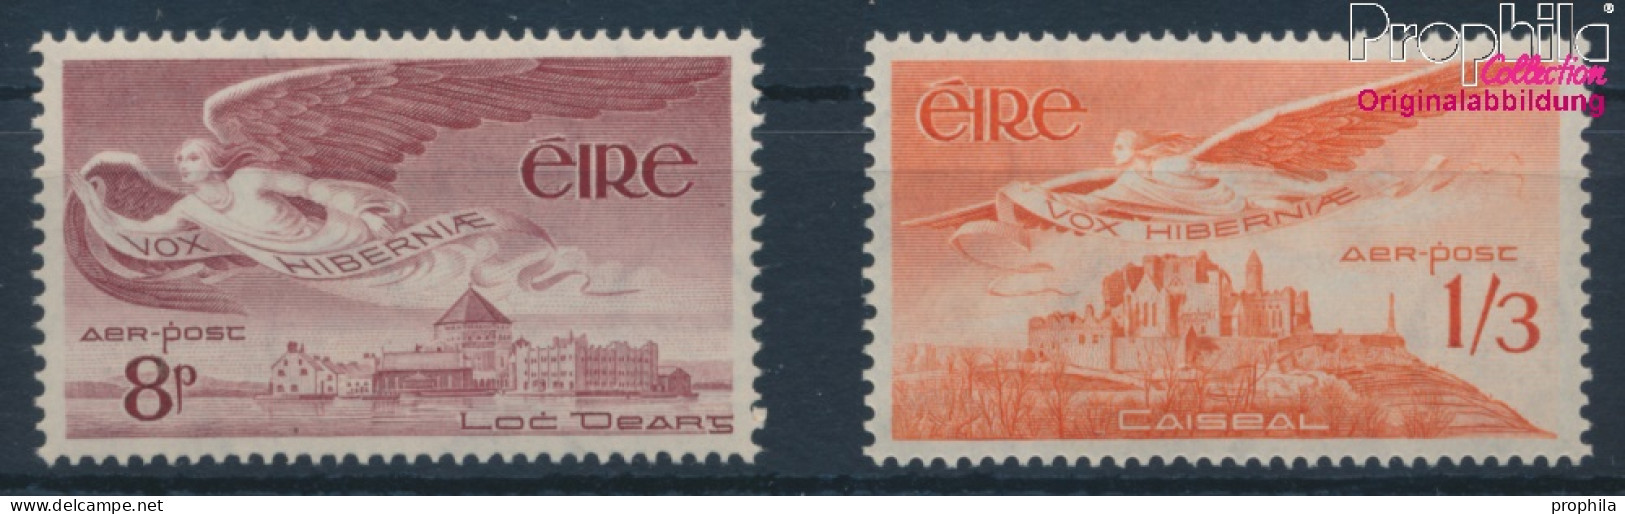 Irland 124-125 (kompl.Ausg.) Postfrisch 1954 Engel (10398342 - Ungebraucht